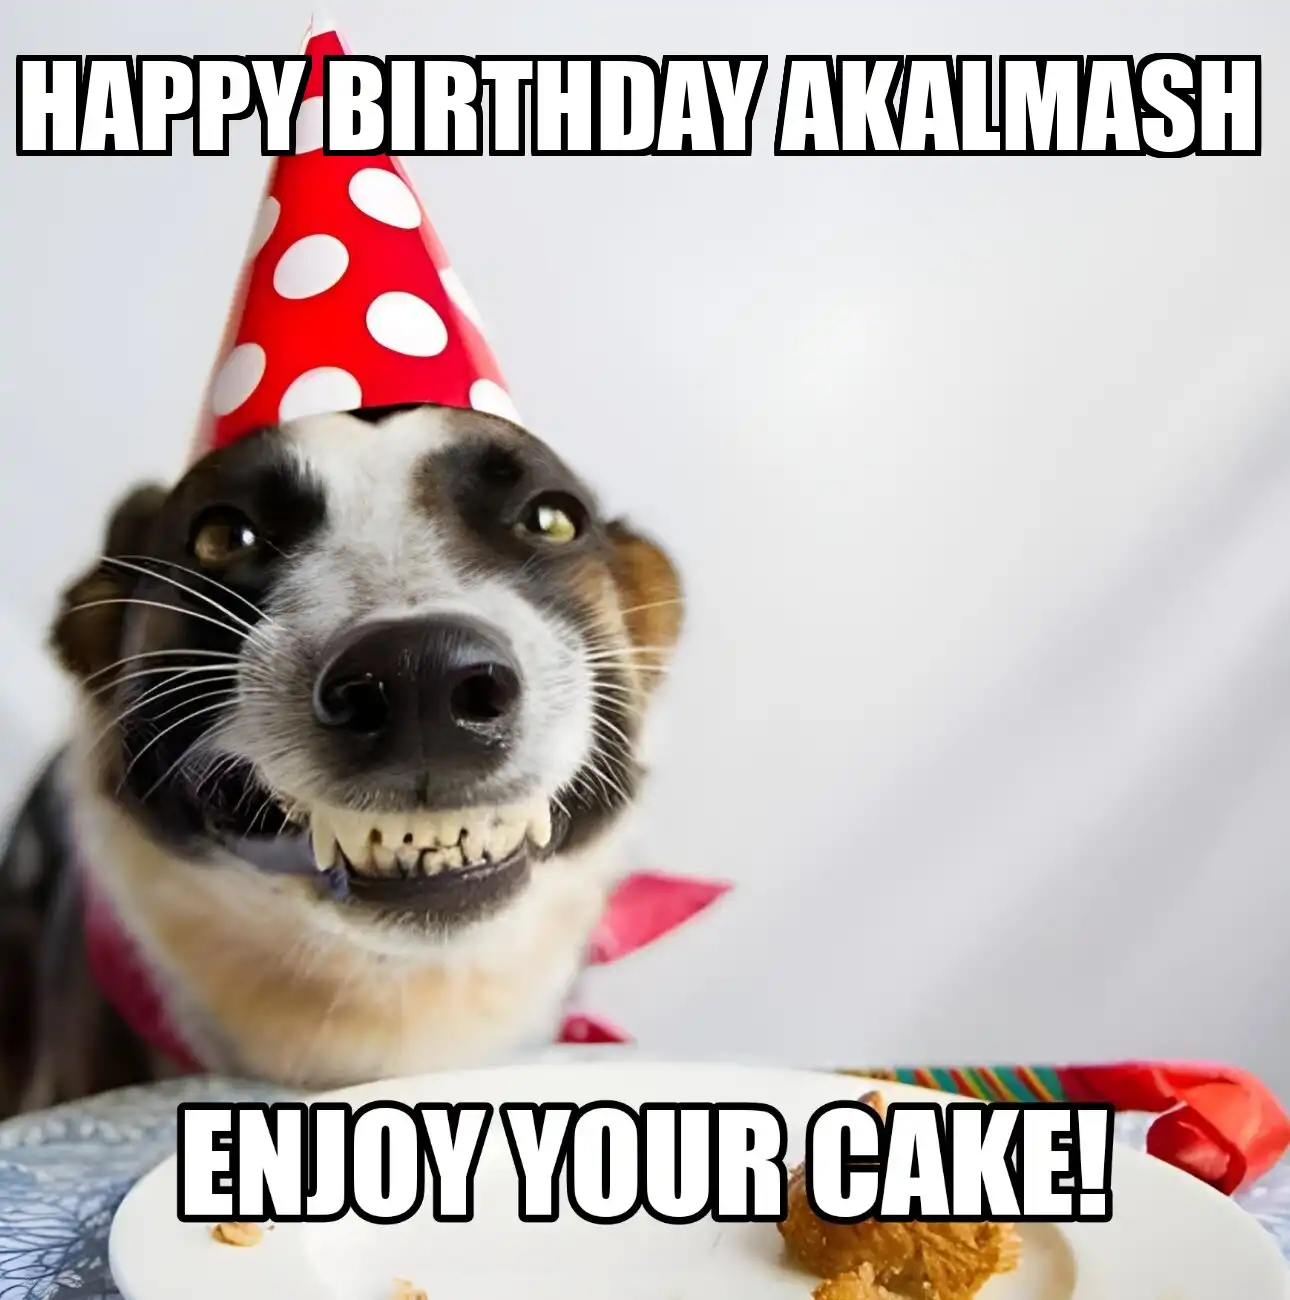 Happy Birthday Akalmash Enjoy Your Cake Dog Meme